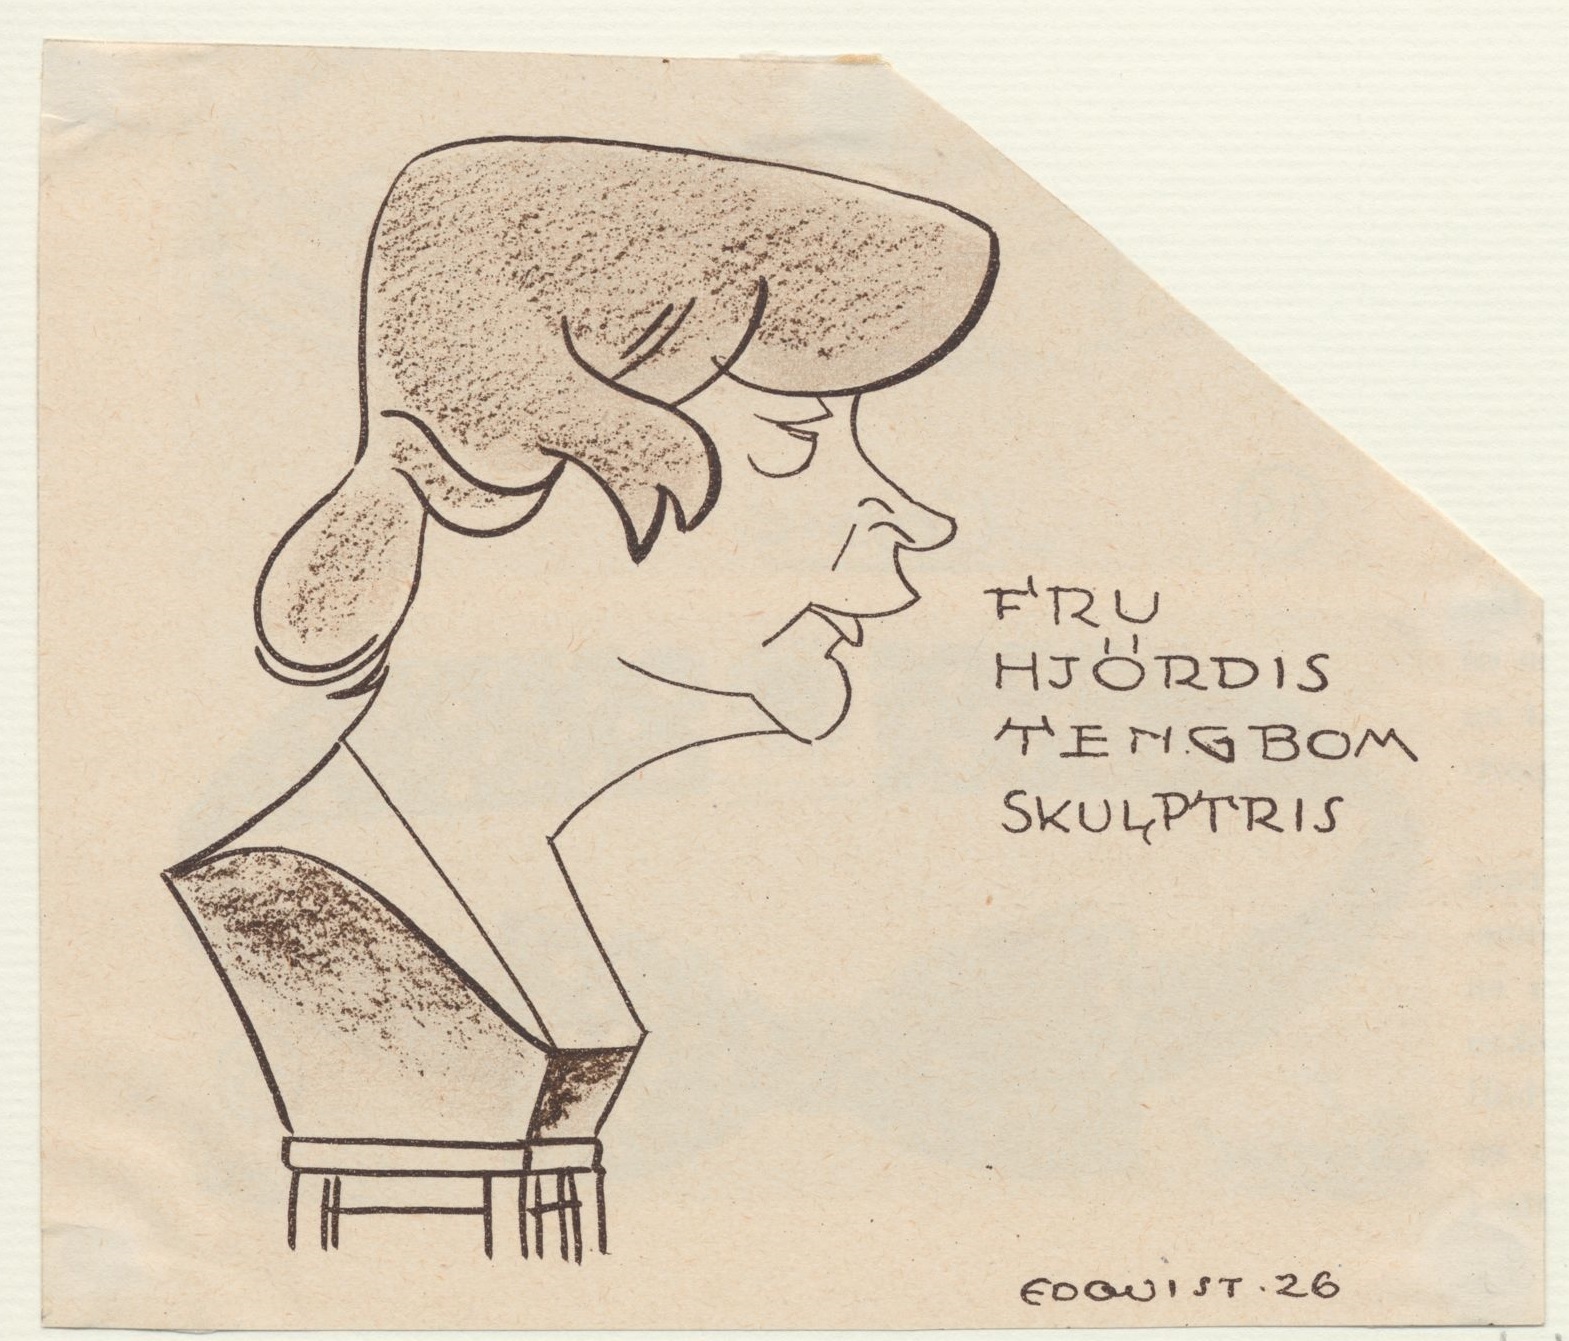 Karikatyr av skulptören Hjördis Tengbom avbildad som en byst i profil